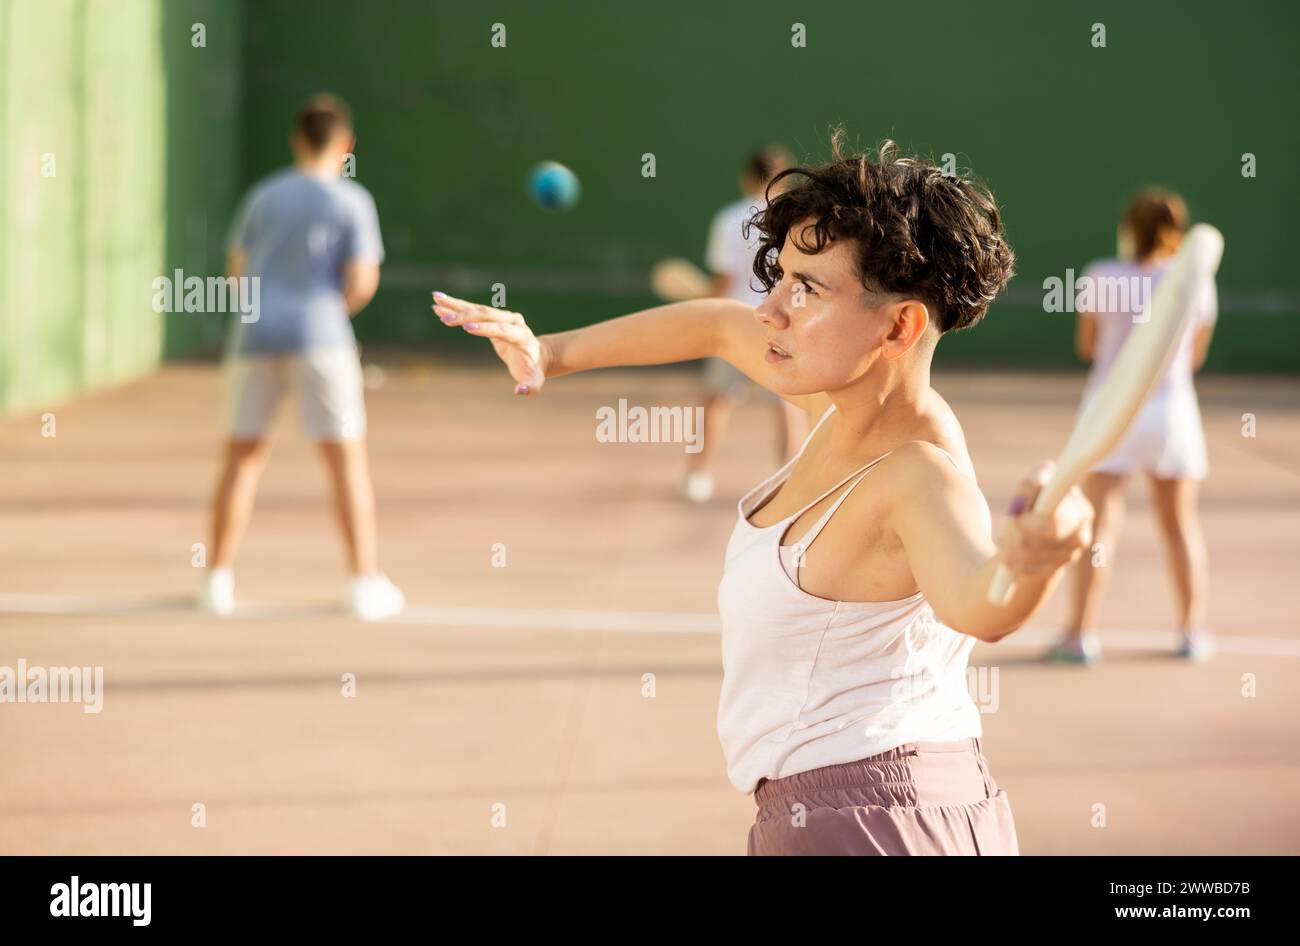 Portrait d'une fille sportive jouant paleta fronton sur un terrain extérieur, prêt à frapper le ballon. Concept de mode de vie sain et actif Banque D'Images